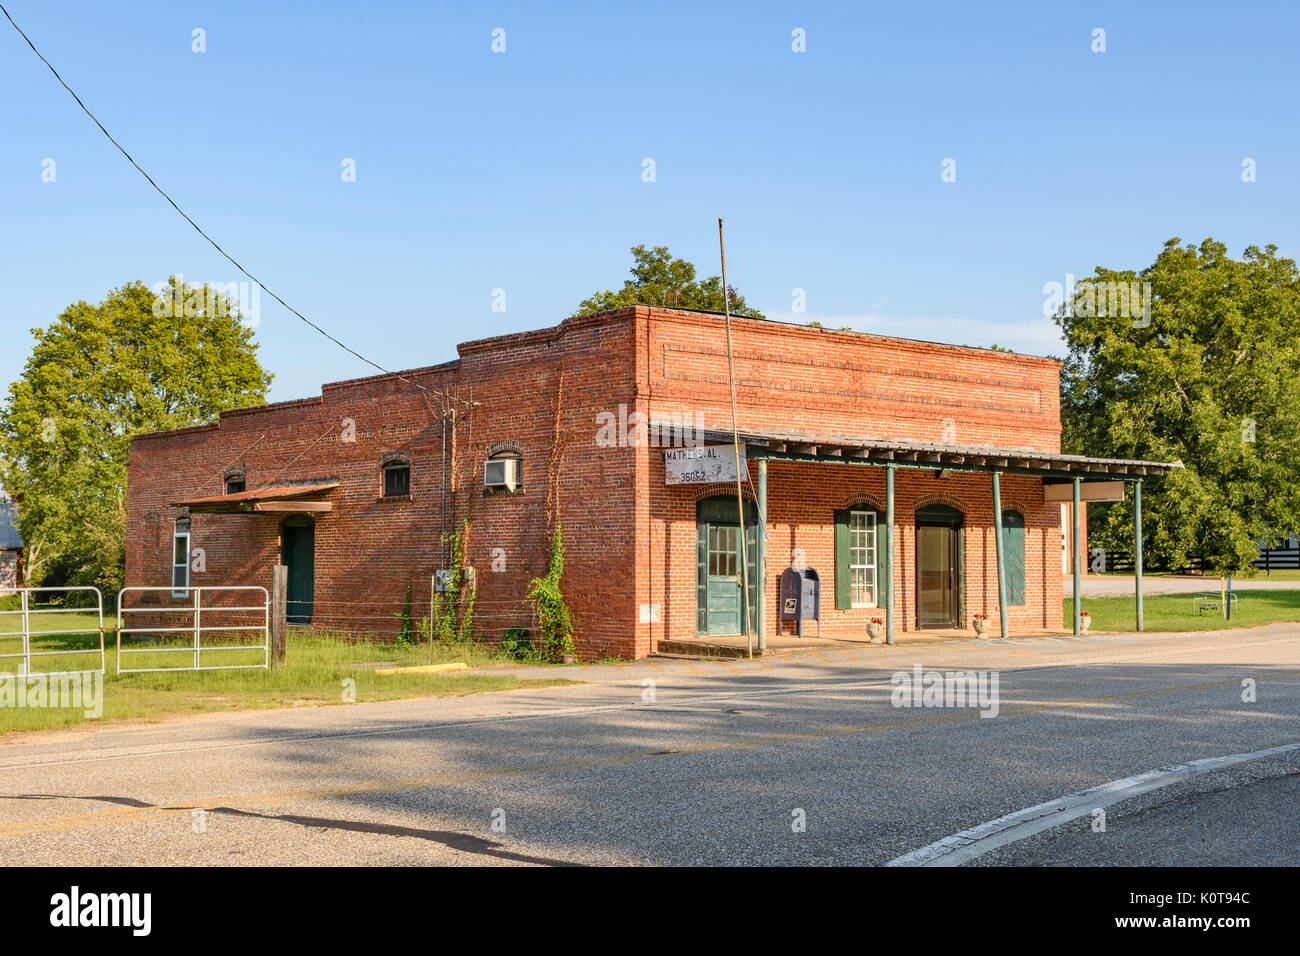 Le petit bureau de poste de Matthews, Alabama, Etats-Unis, c'est typique d'une petite ville ou une collectivité rurale dans le sud des États-Unis. Banque D'Images